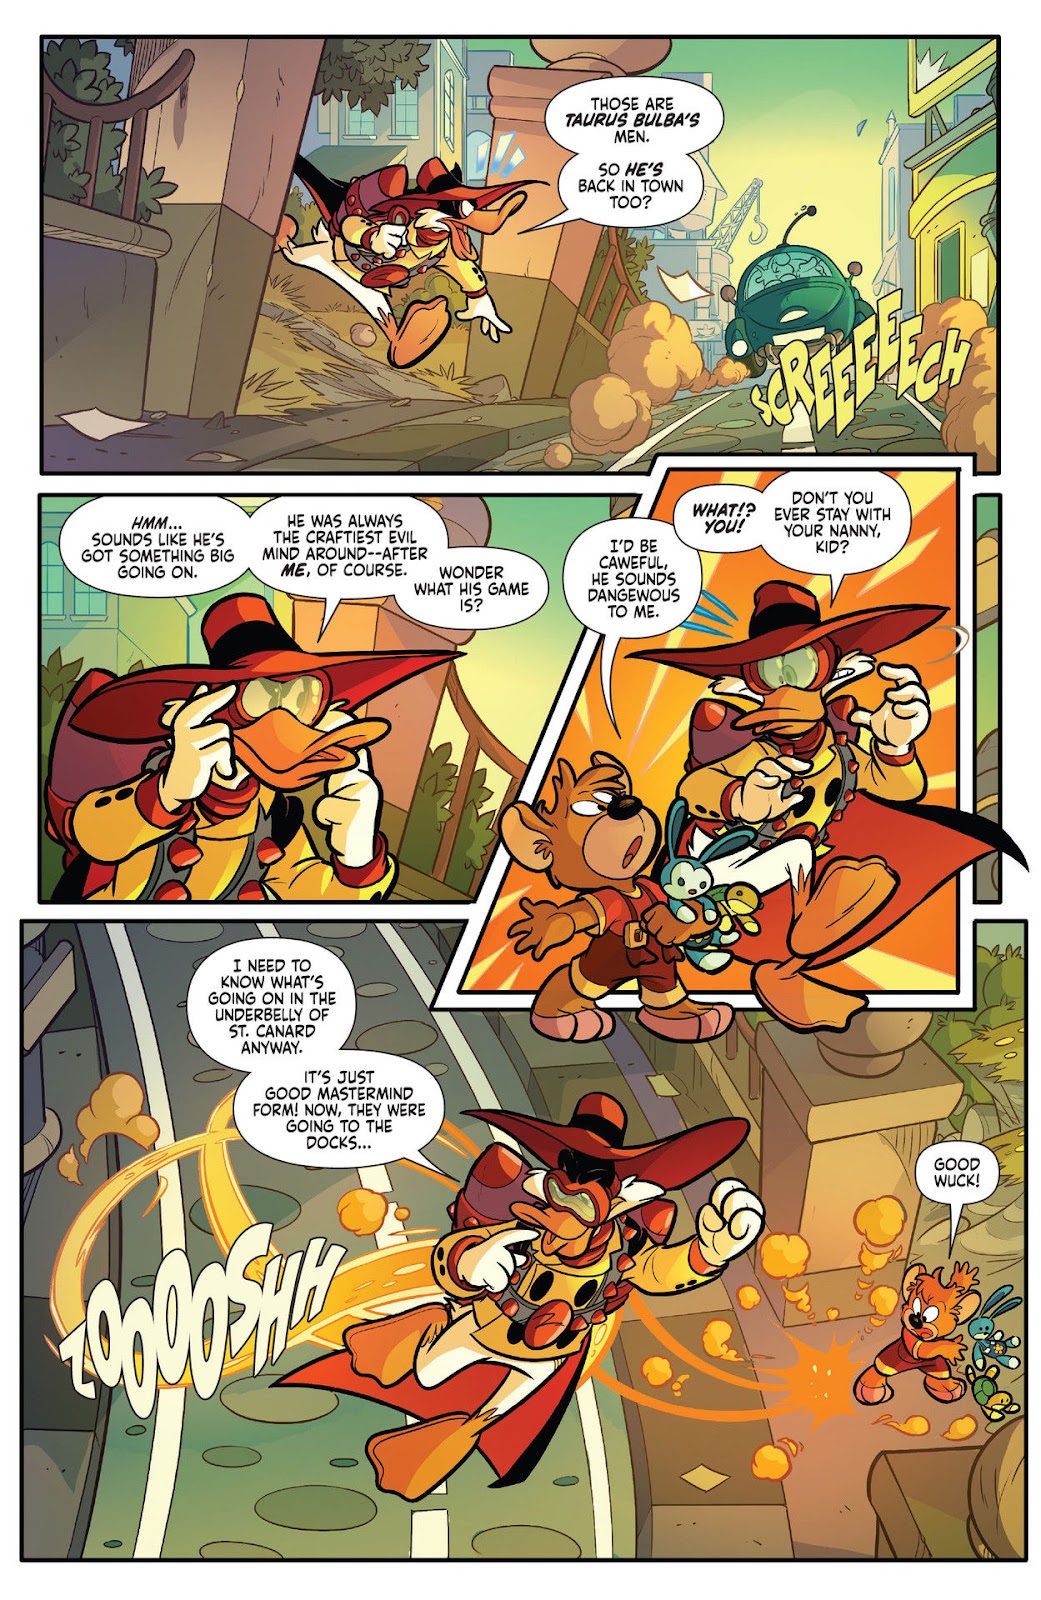 Darkwing Duck: Negaduck issue 1 - Page 20